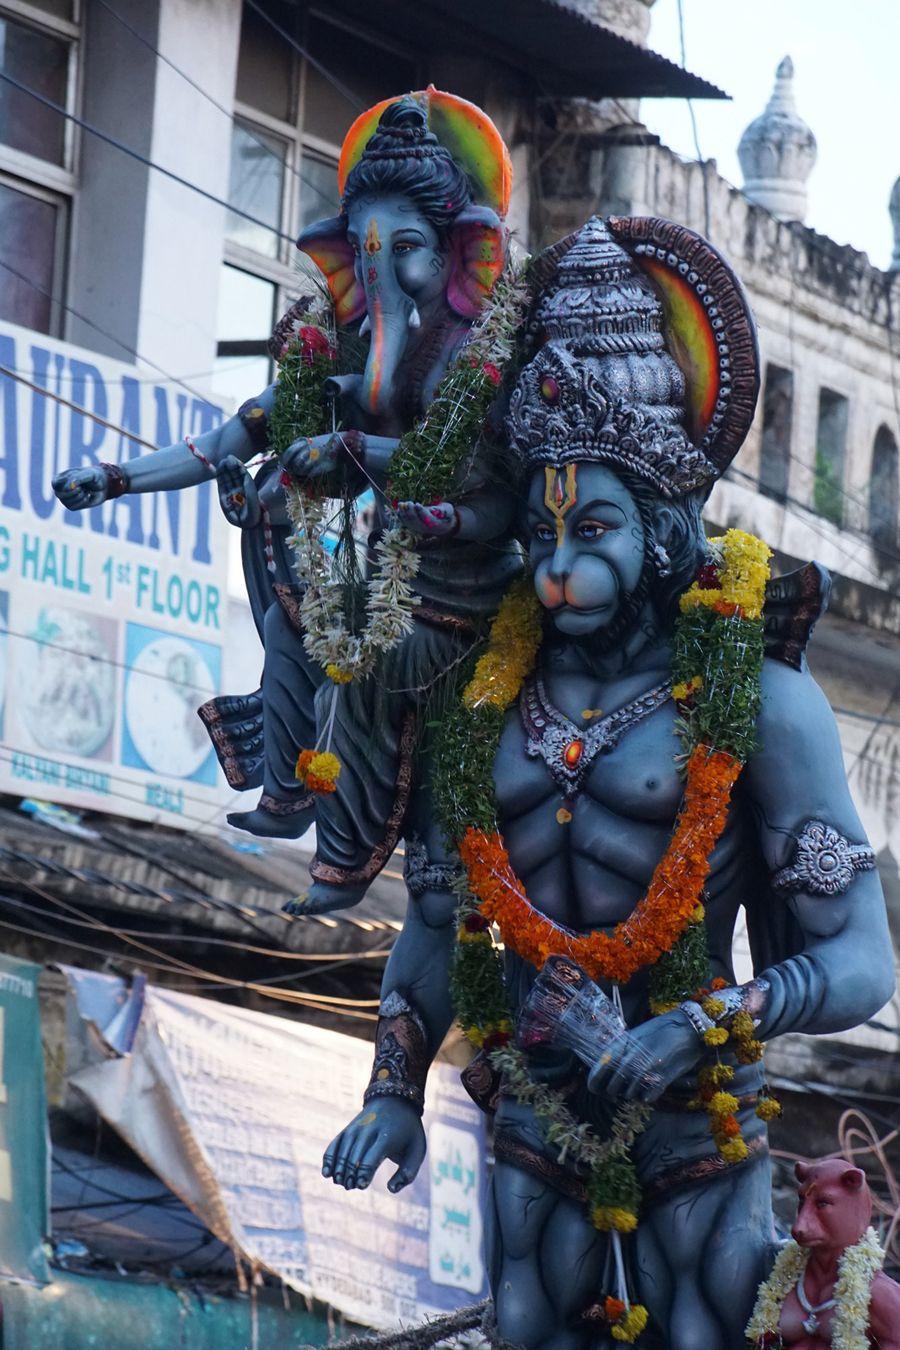 PHOTOS: Ganesh Nimajjanam in Hyderabad